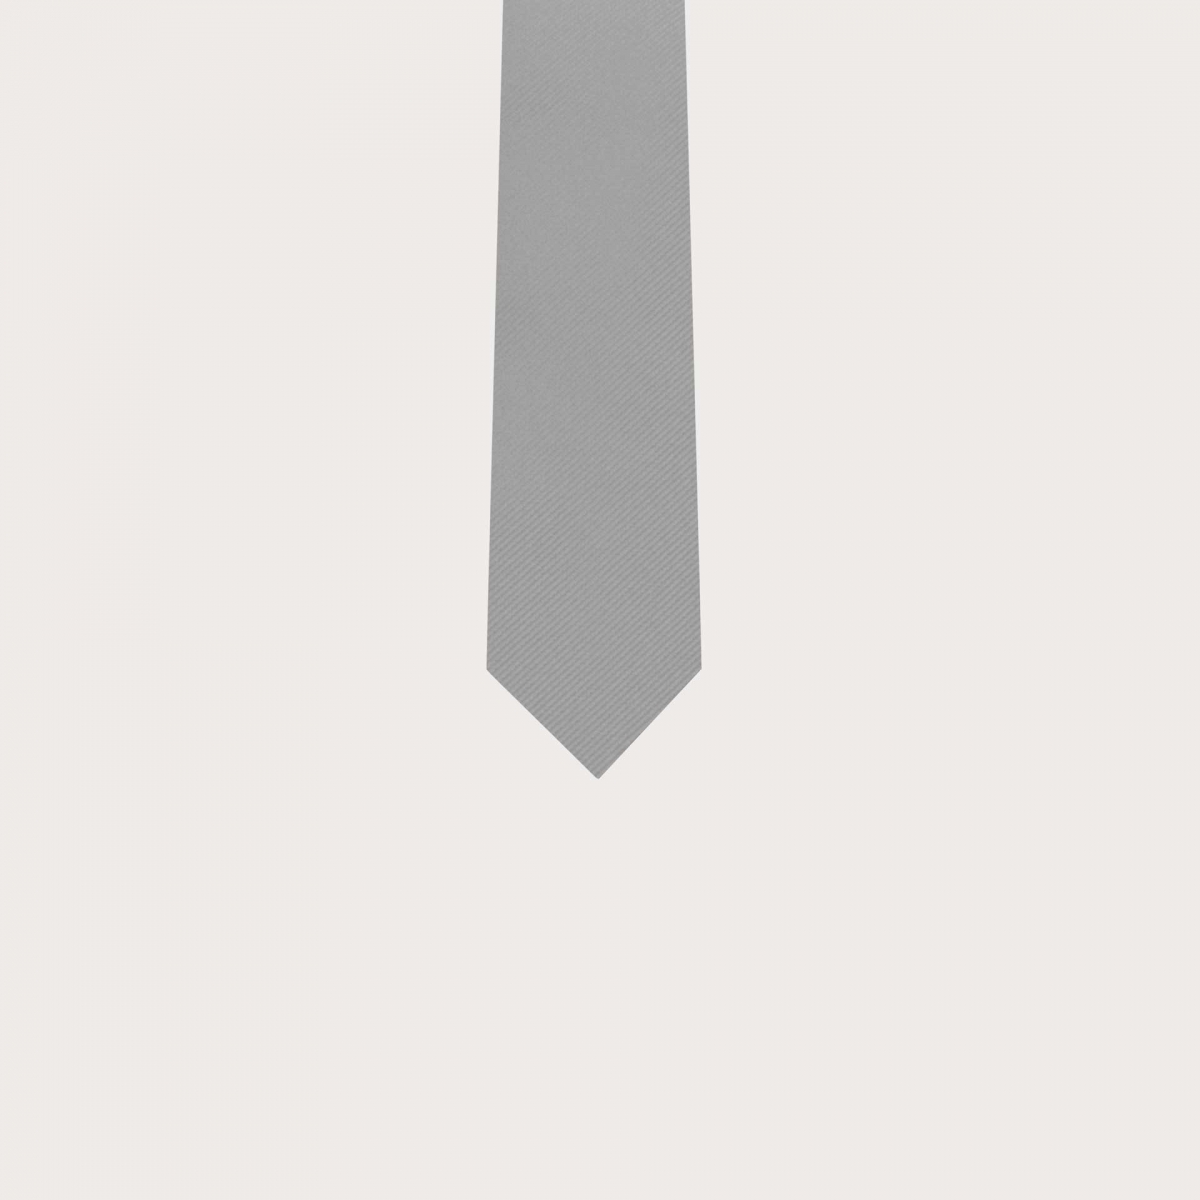 BRUCLE Corbata de seda gris para niños y adolescentes